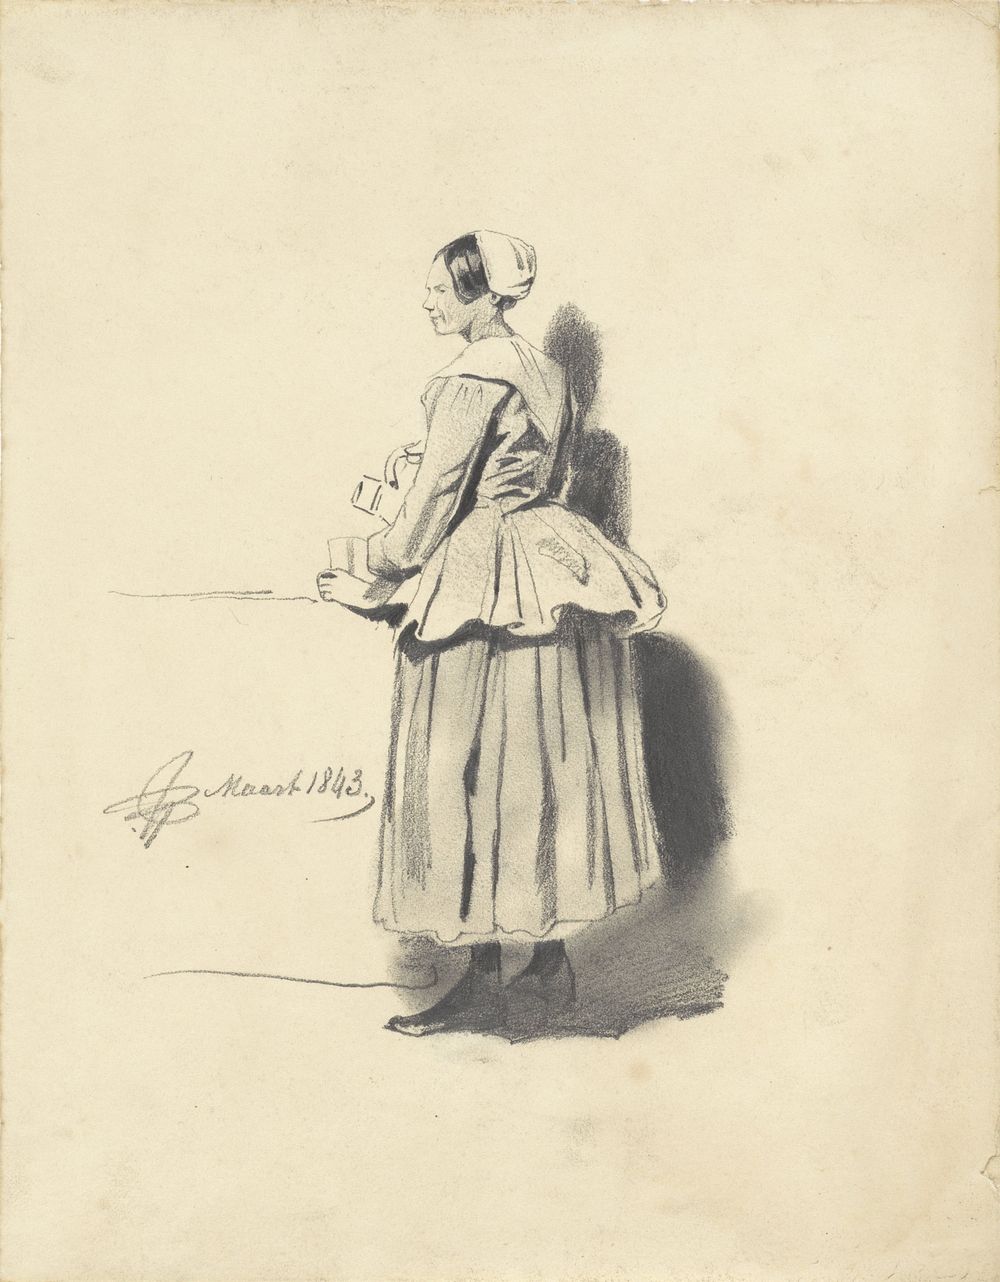 Staande vrouw met kruik en beker (1843) by Pieter van Loon